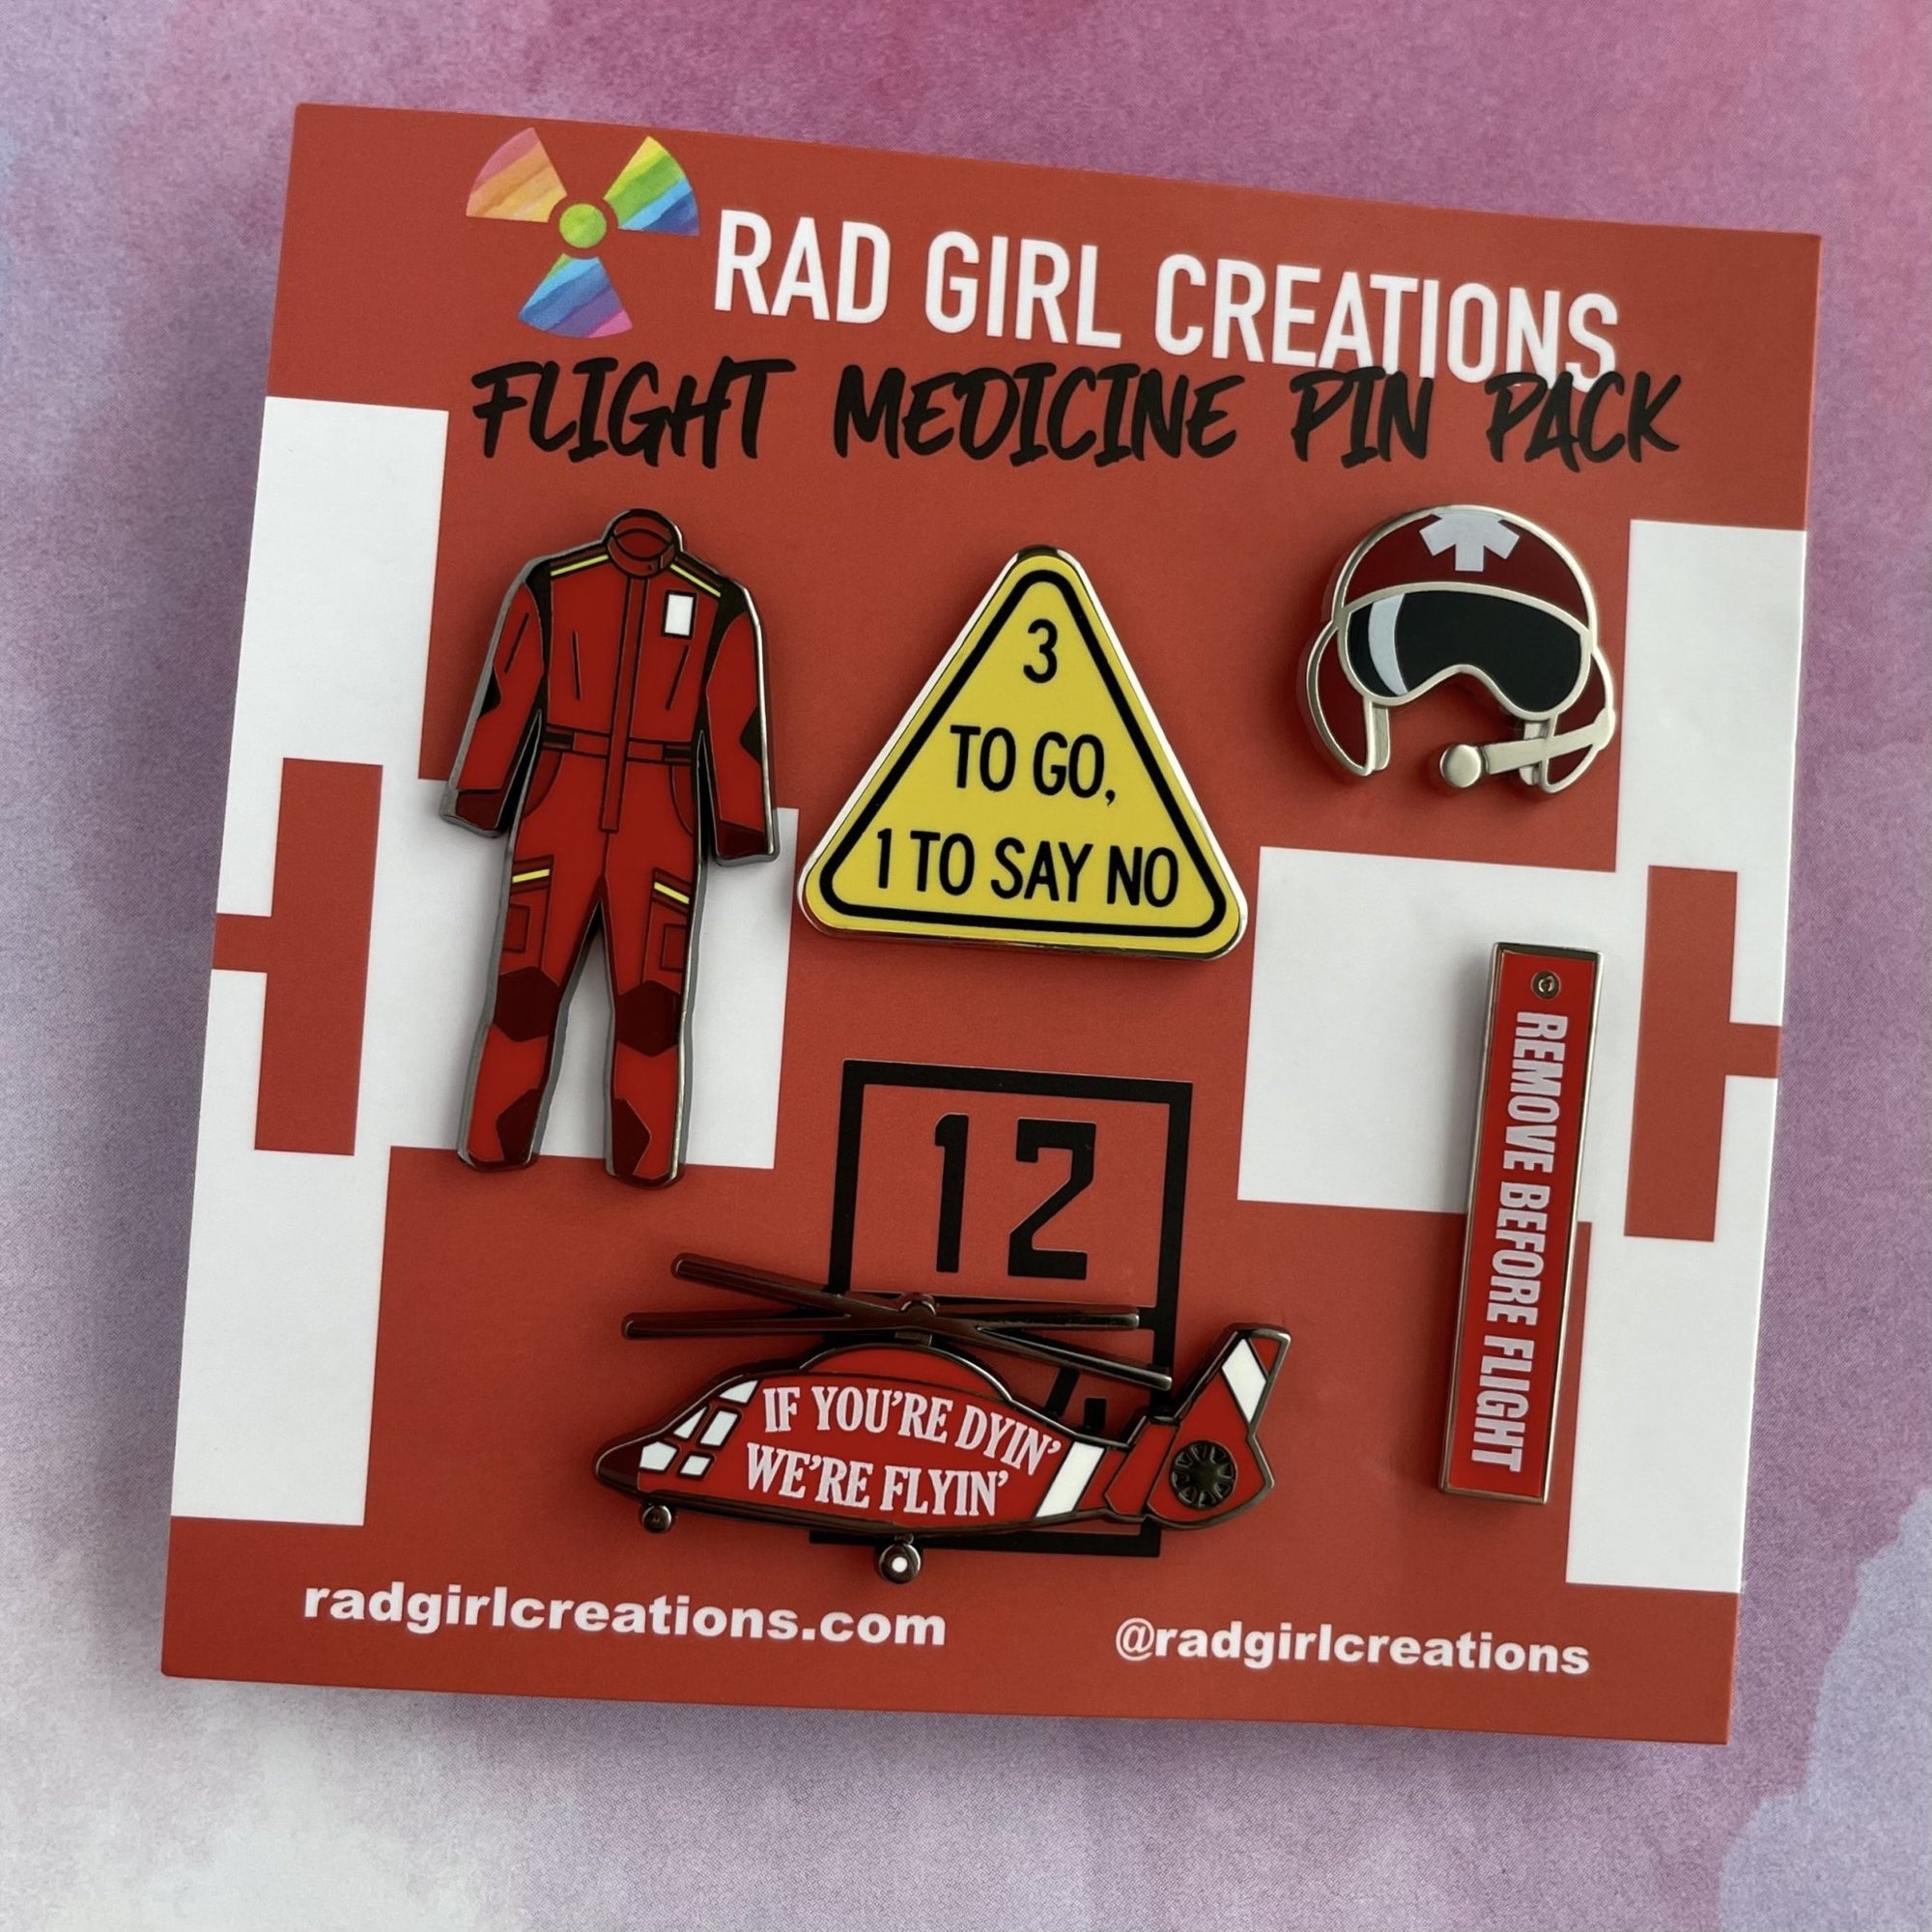 Flight Medicine Pin Pack - Rad Girl Creations